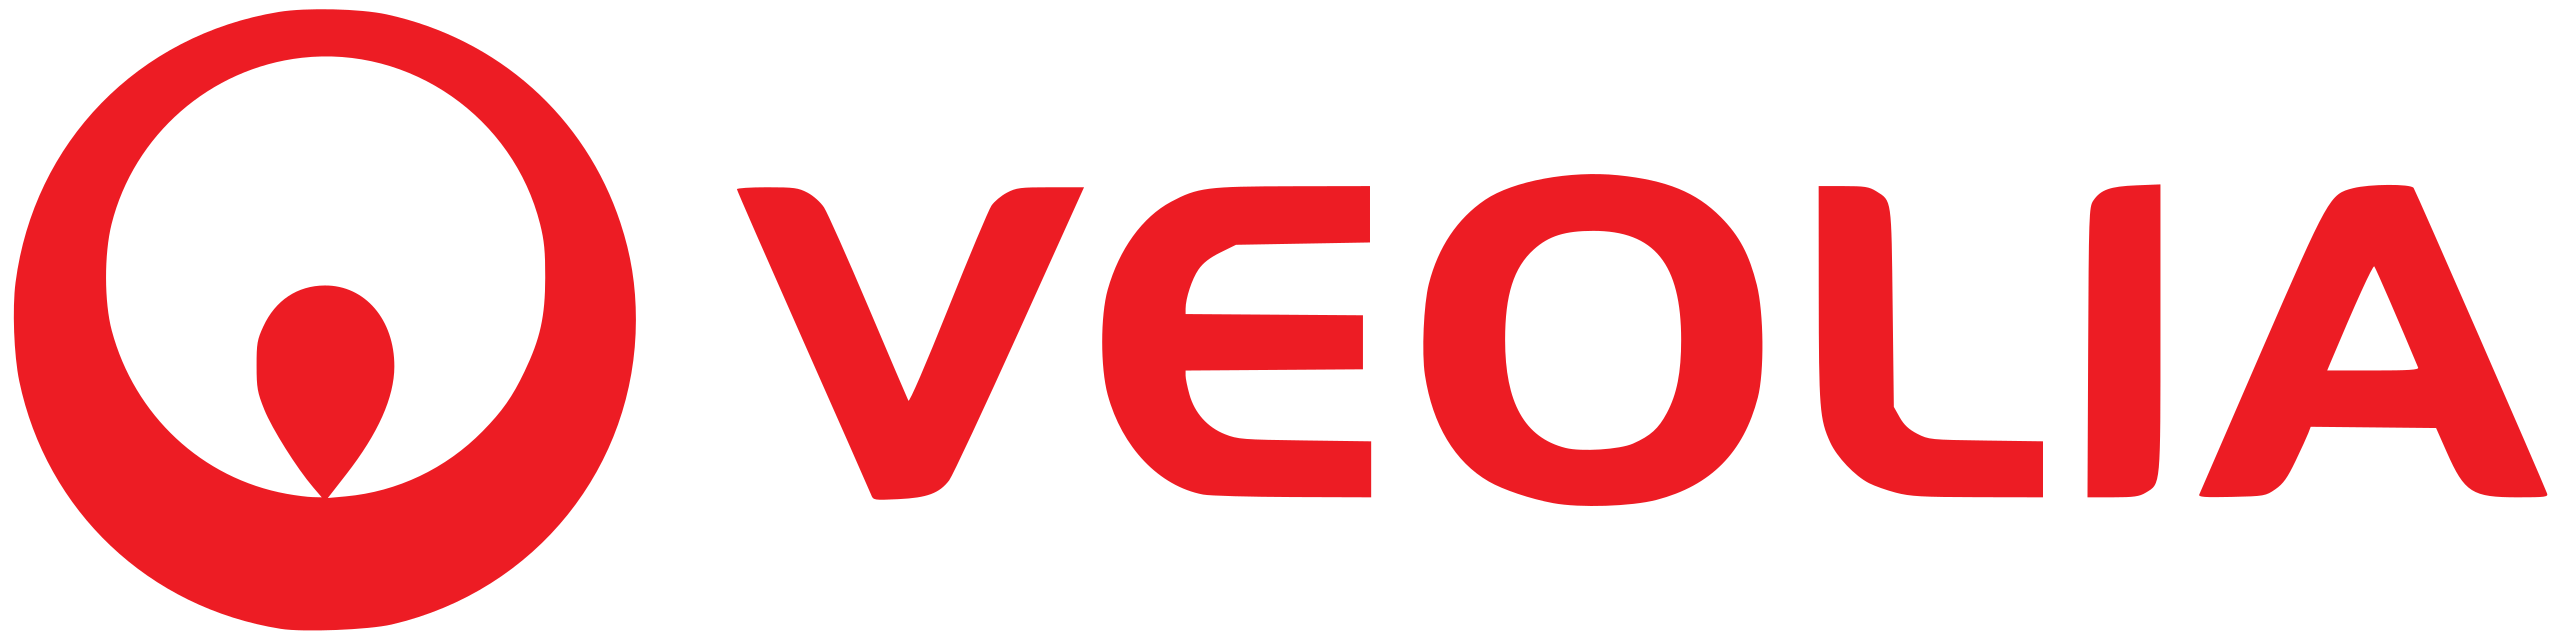 2560px-Veolia_logo.svg